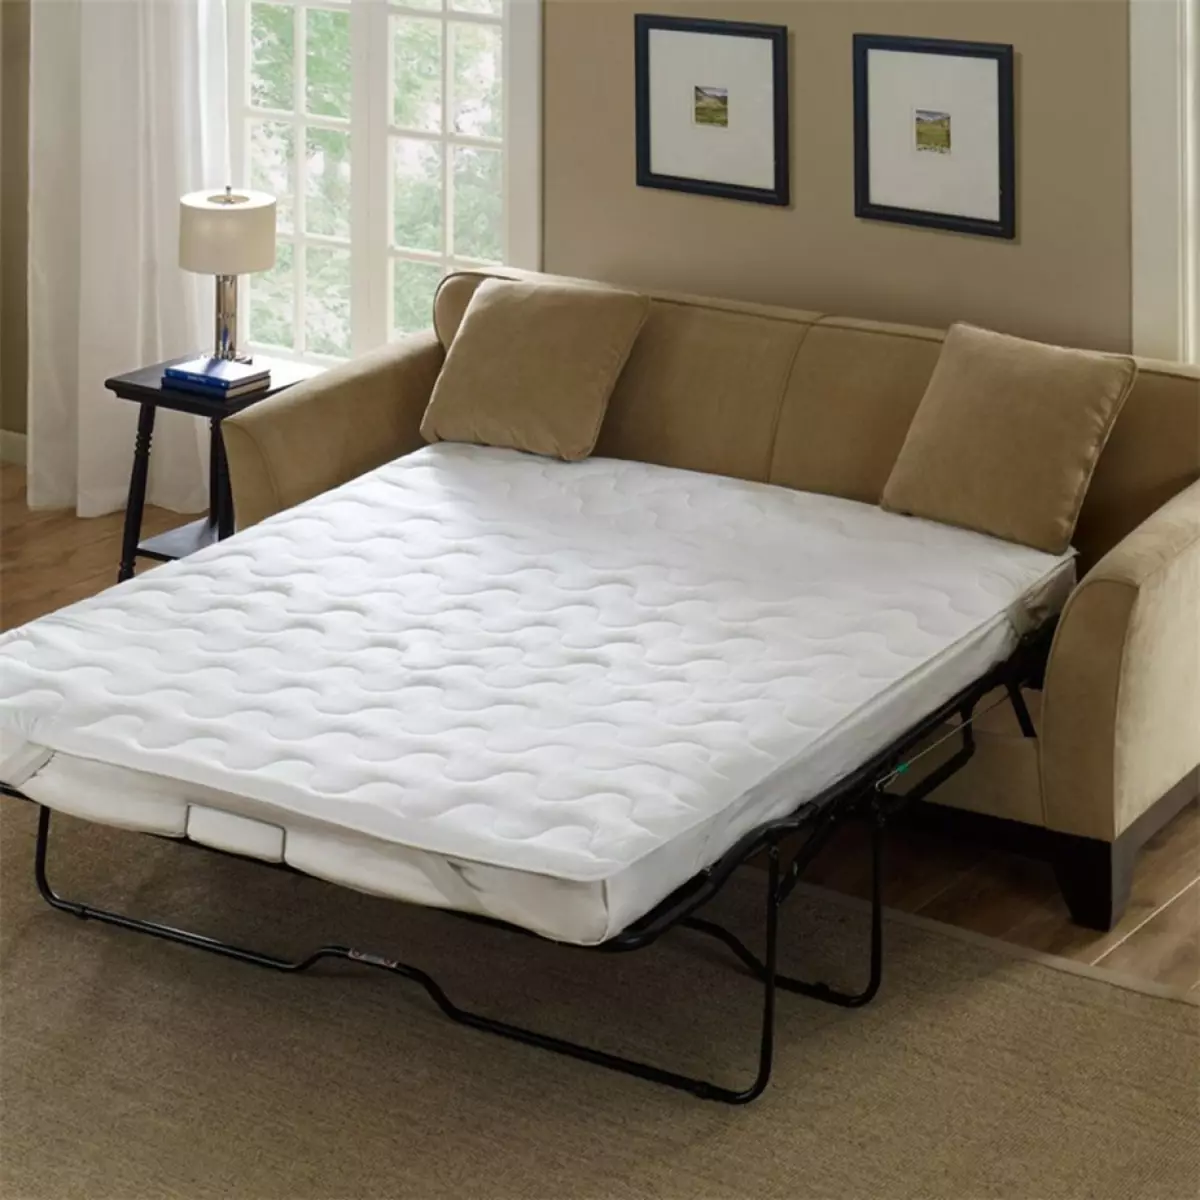 Slaapbanken met een orthopedisch matras: kies voor dagelijkse uitrollen en vouwbare banken met lente en anatomische matras 8999_8